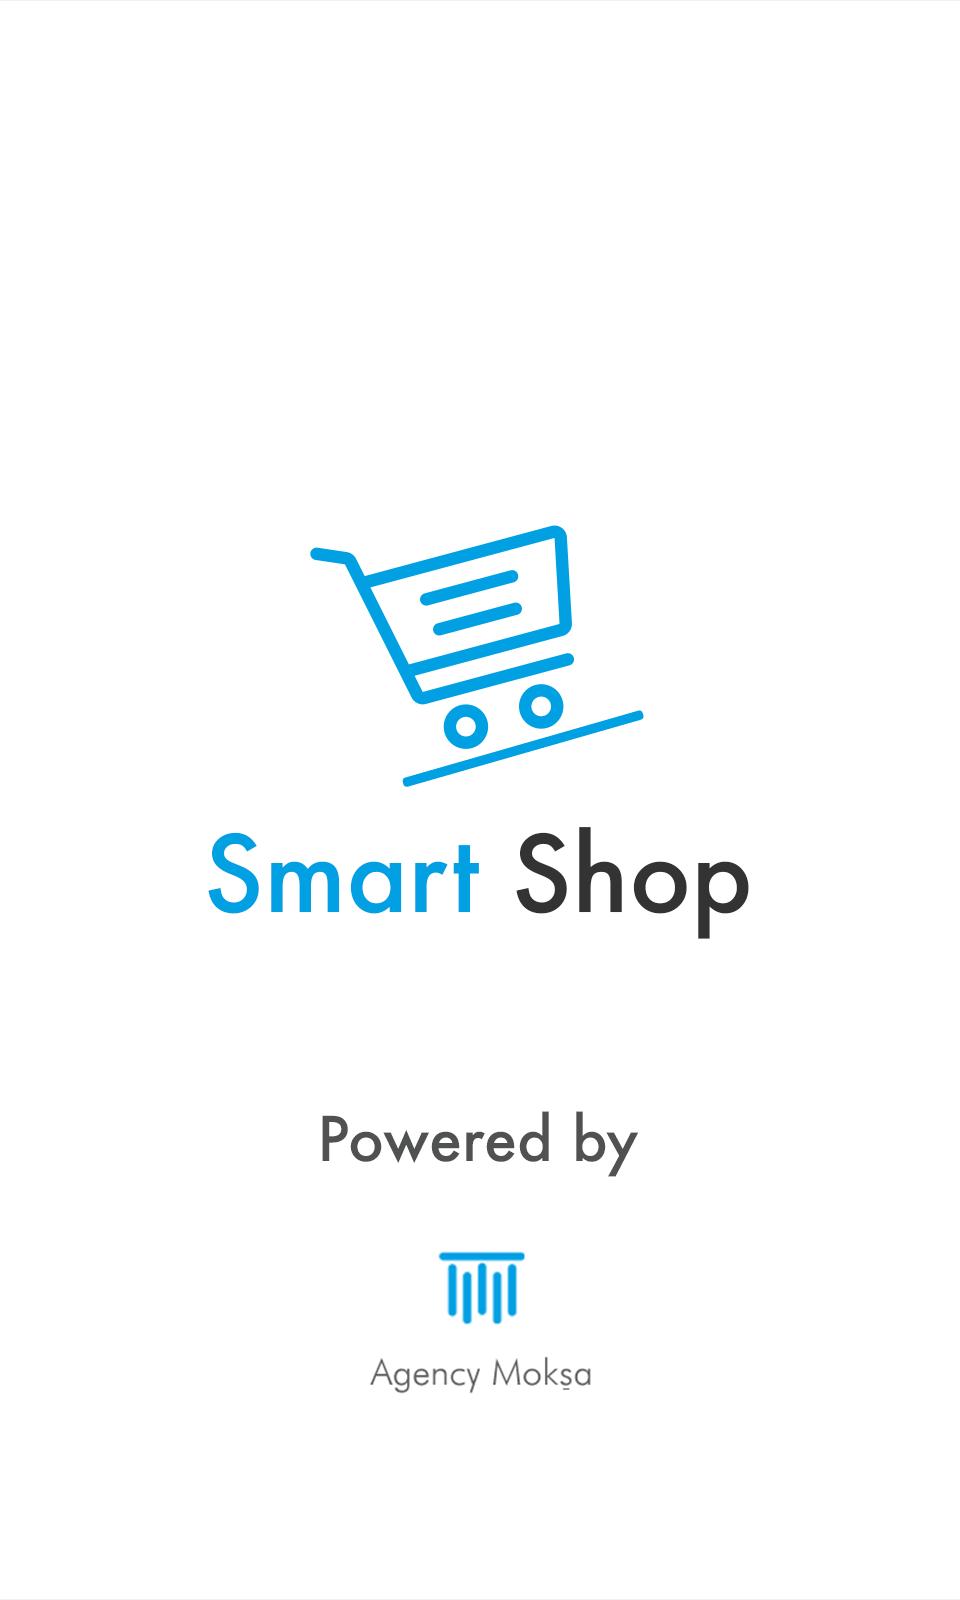 Smart shopping. Smart shop mobile. Smart shop. Smart shop mobile logo.